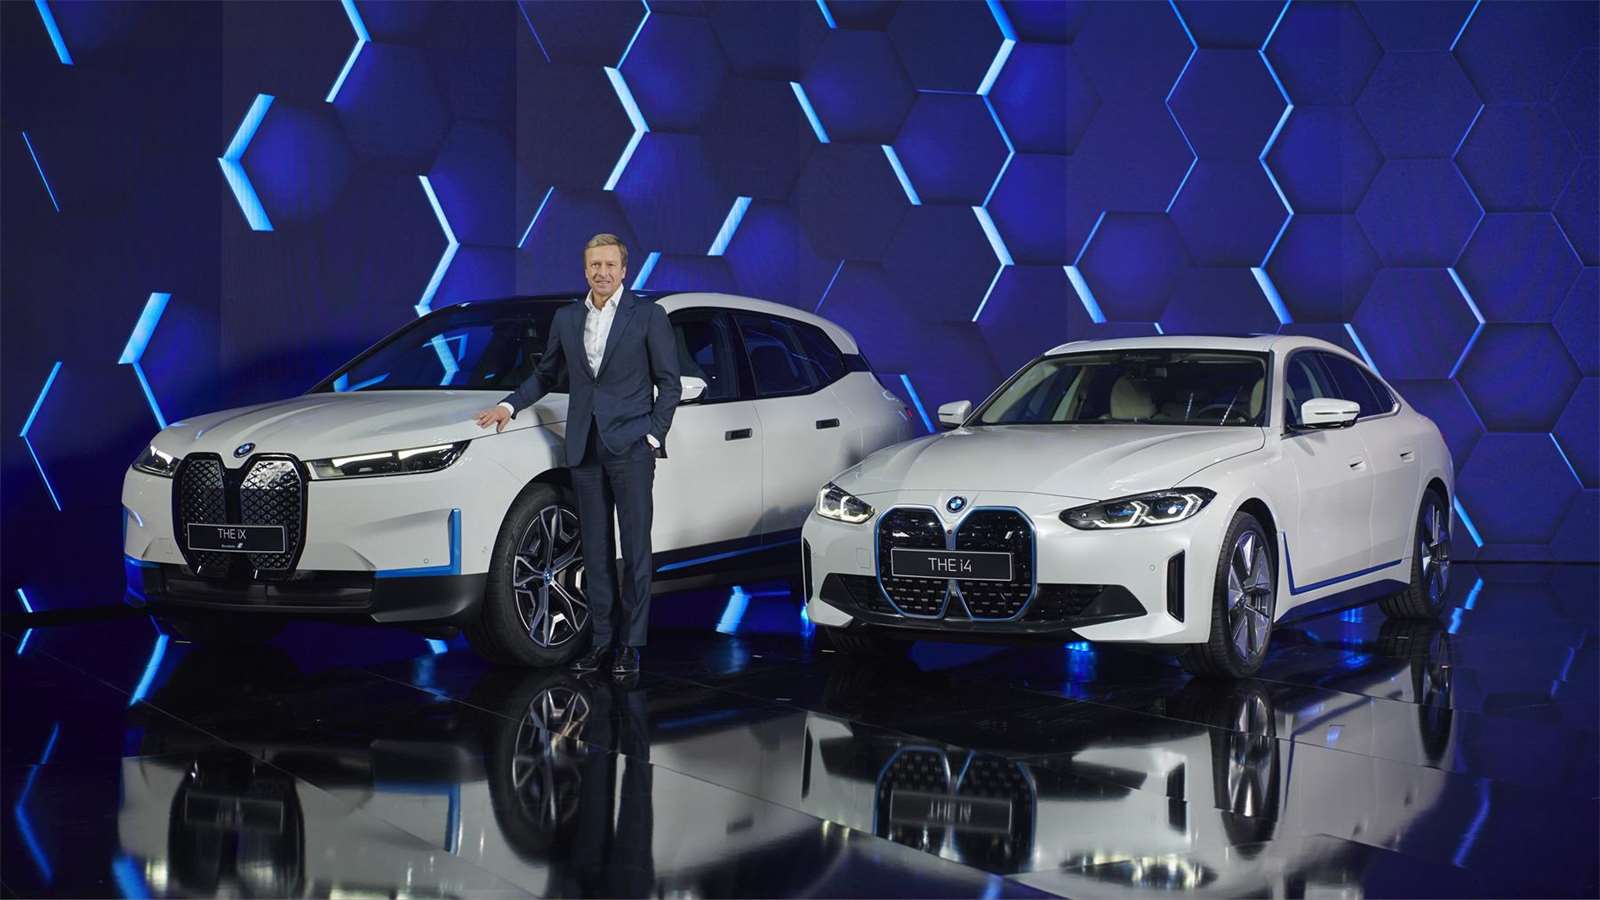 Galerie - Auta jako Netflix. BMW má vyhřívání sedaček za předplatné. Co si nechá zákazník líbit? – VTM.cz